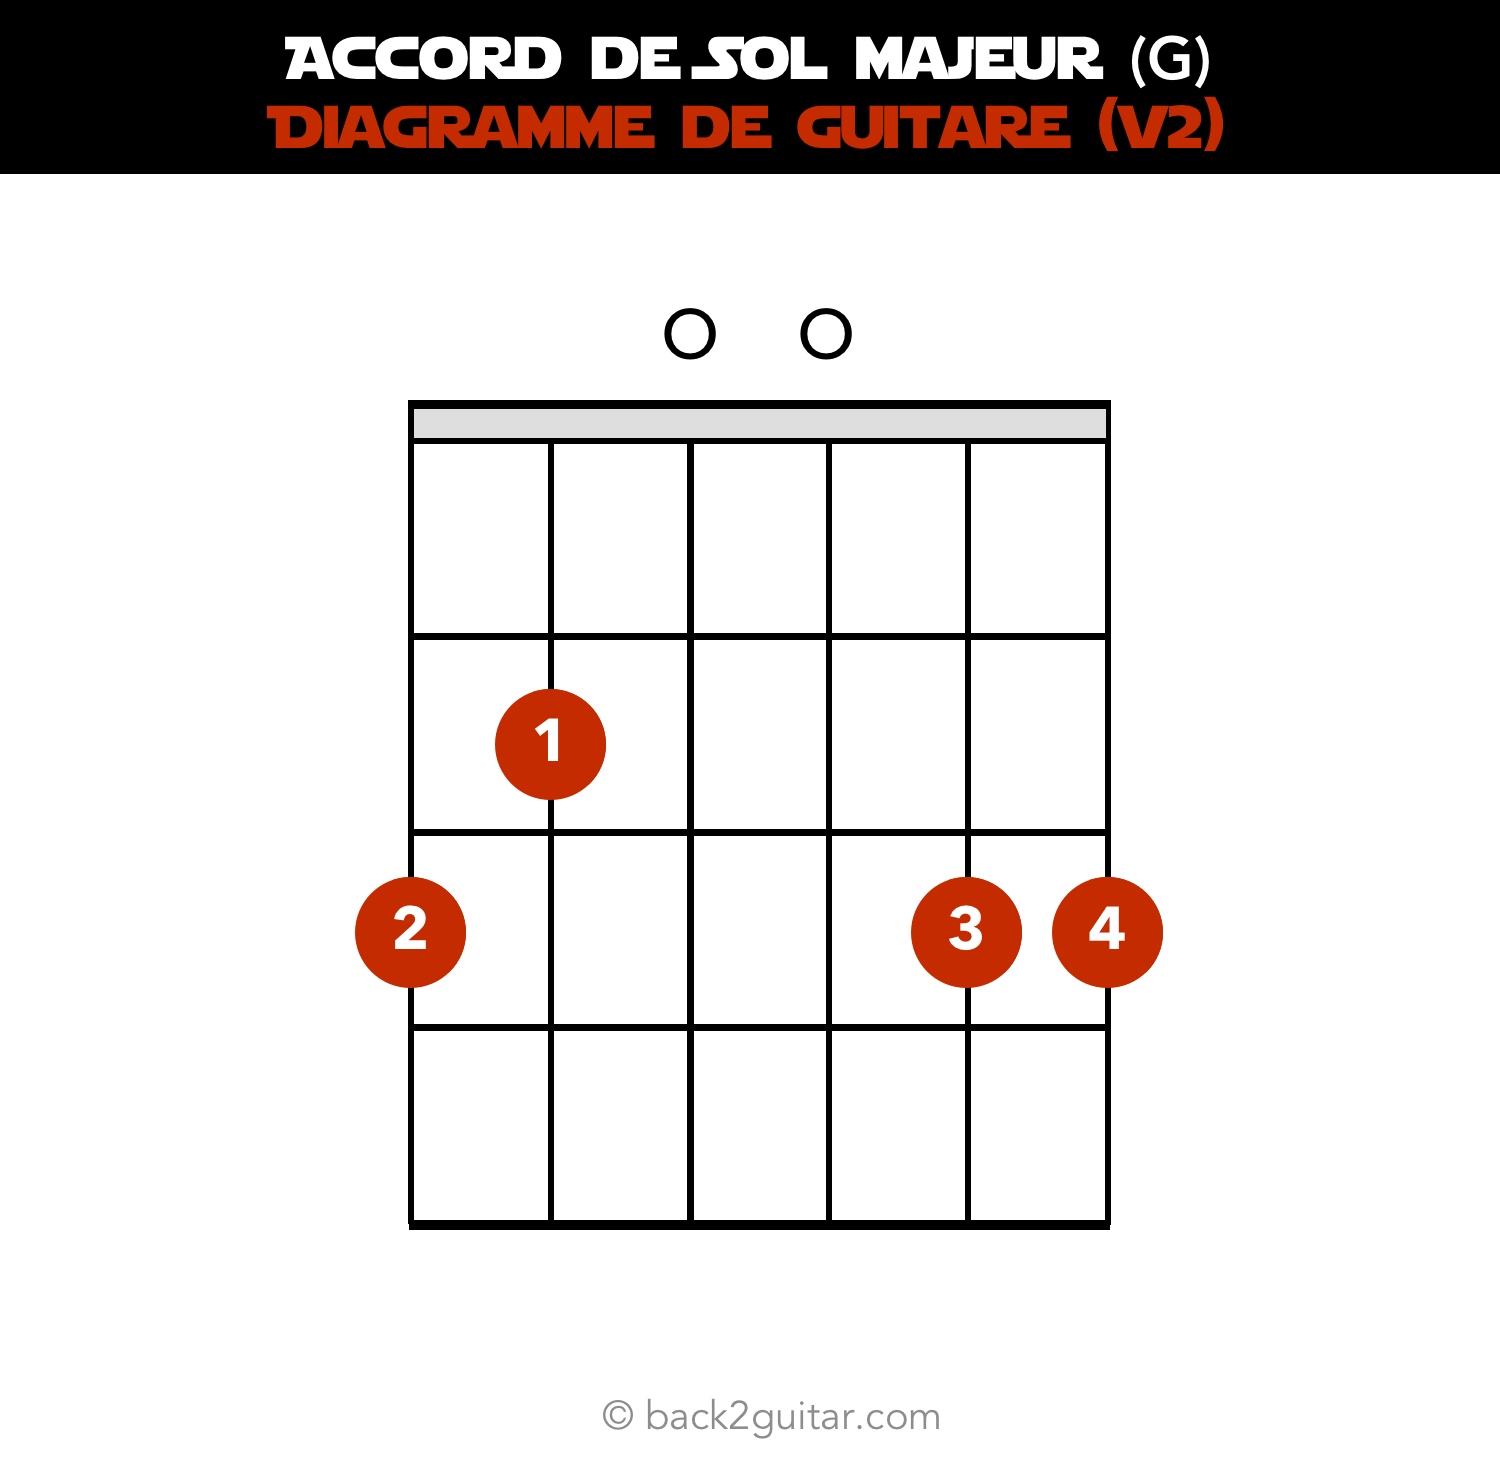 accord guitare sol majeur diagramme guitare V2 (G)